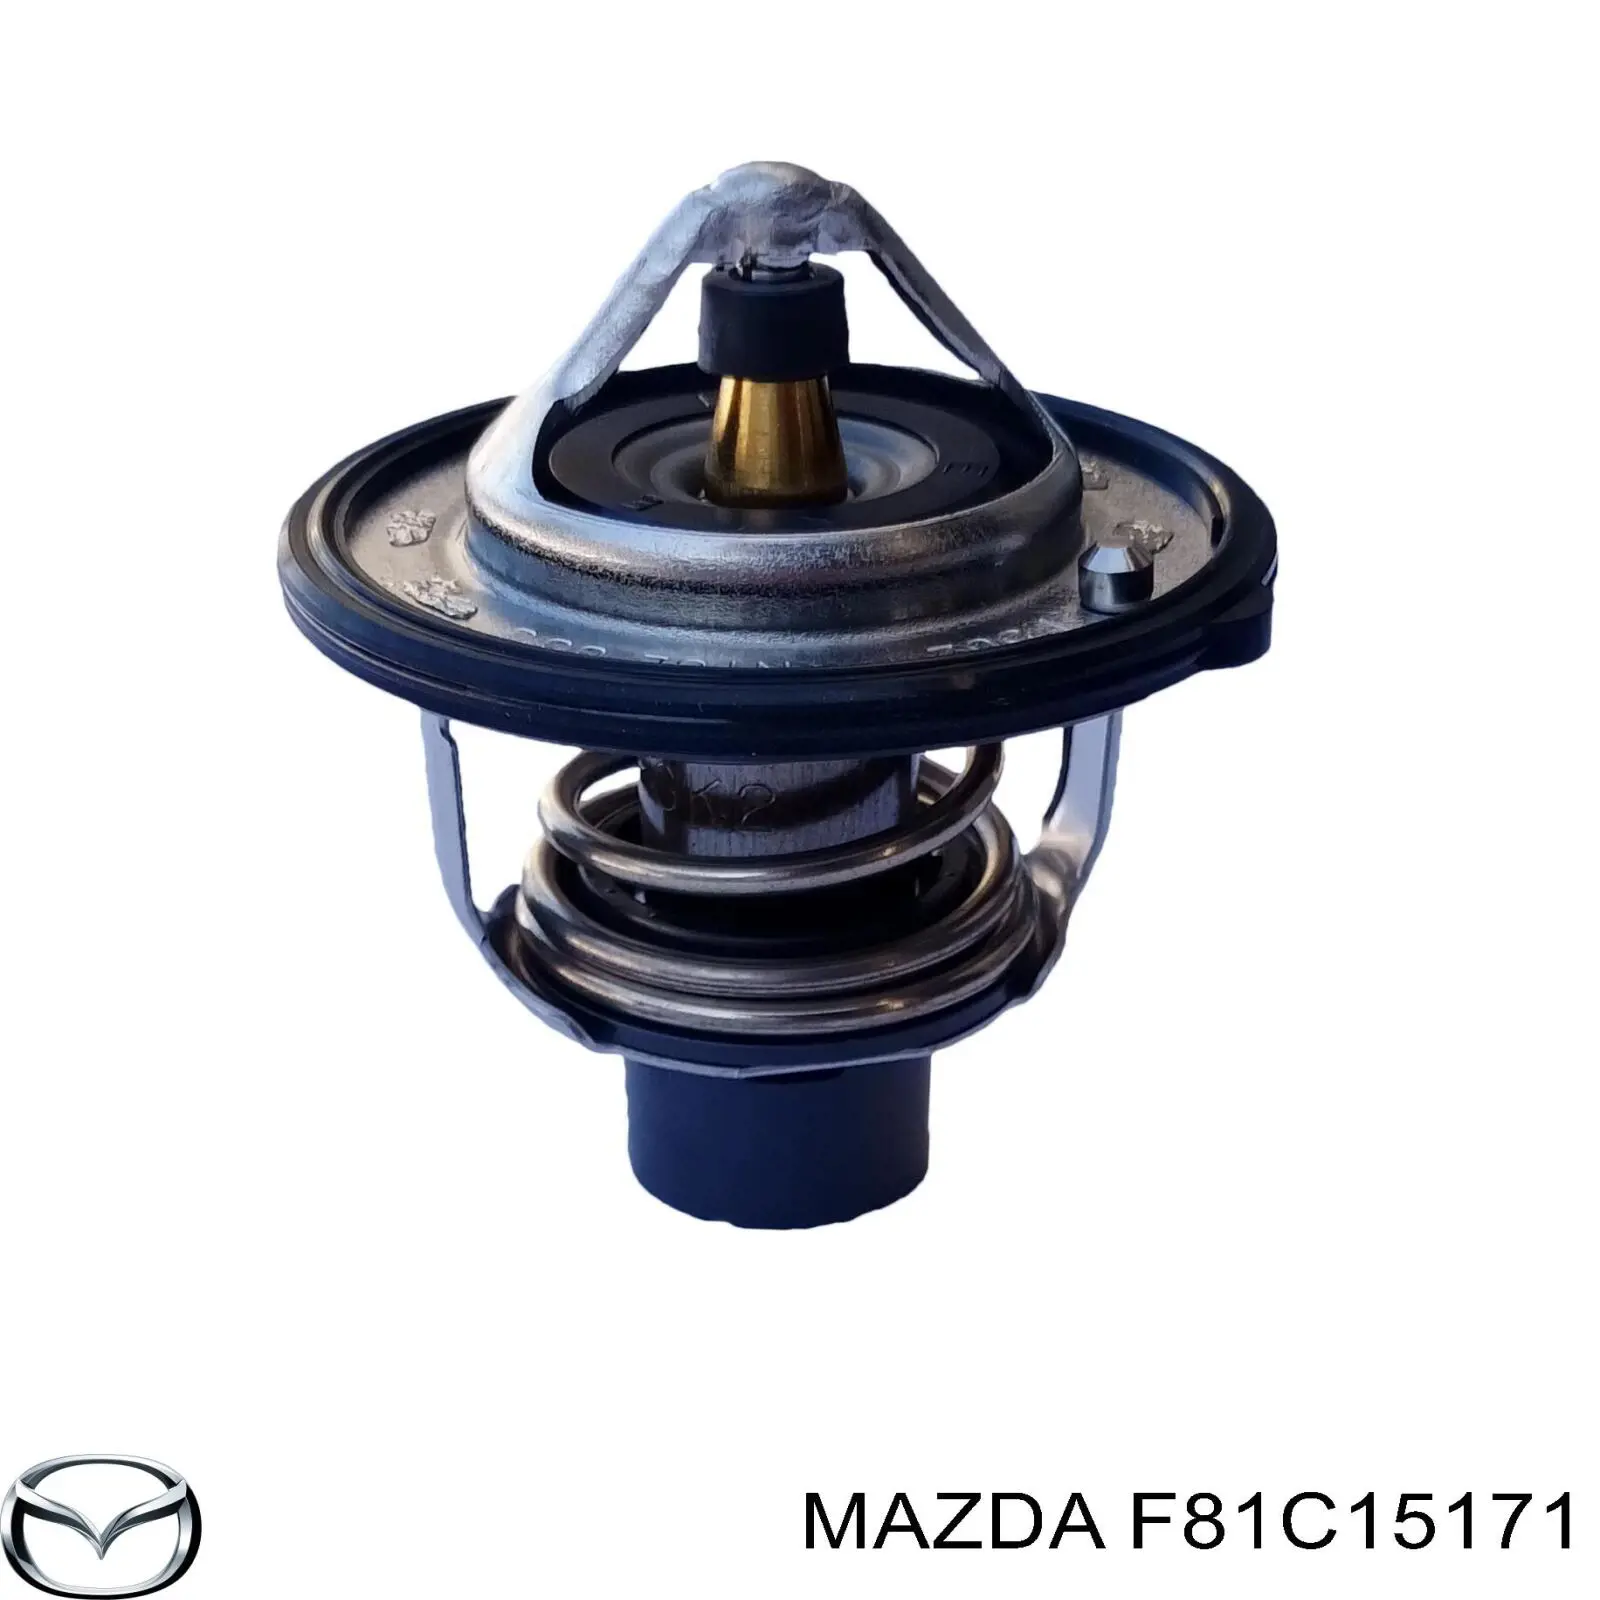 F81C15171 Mazda termostato